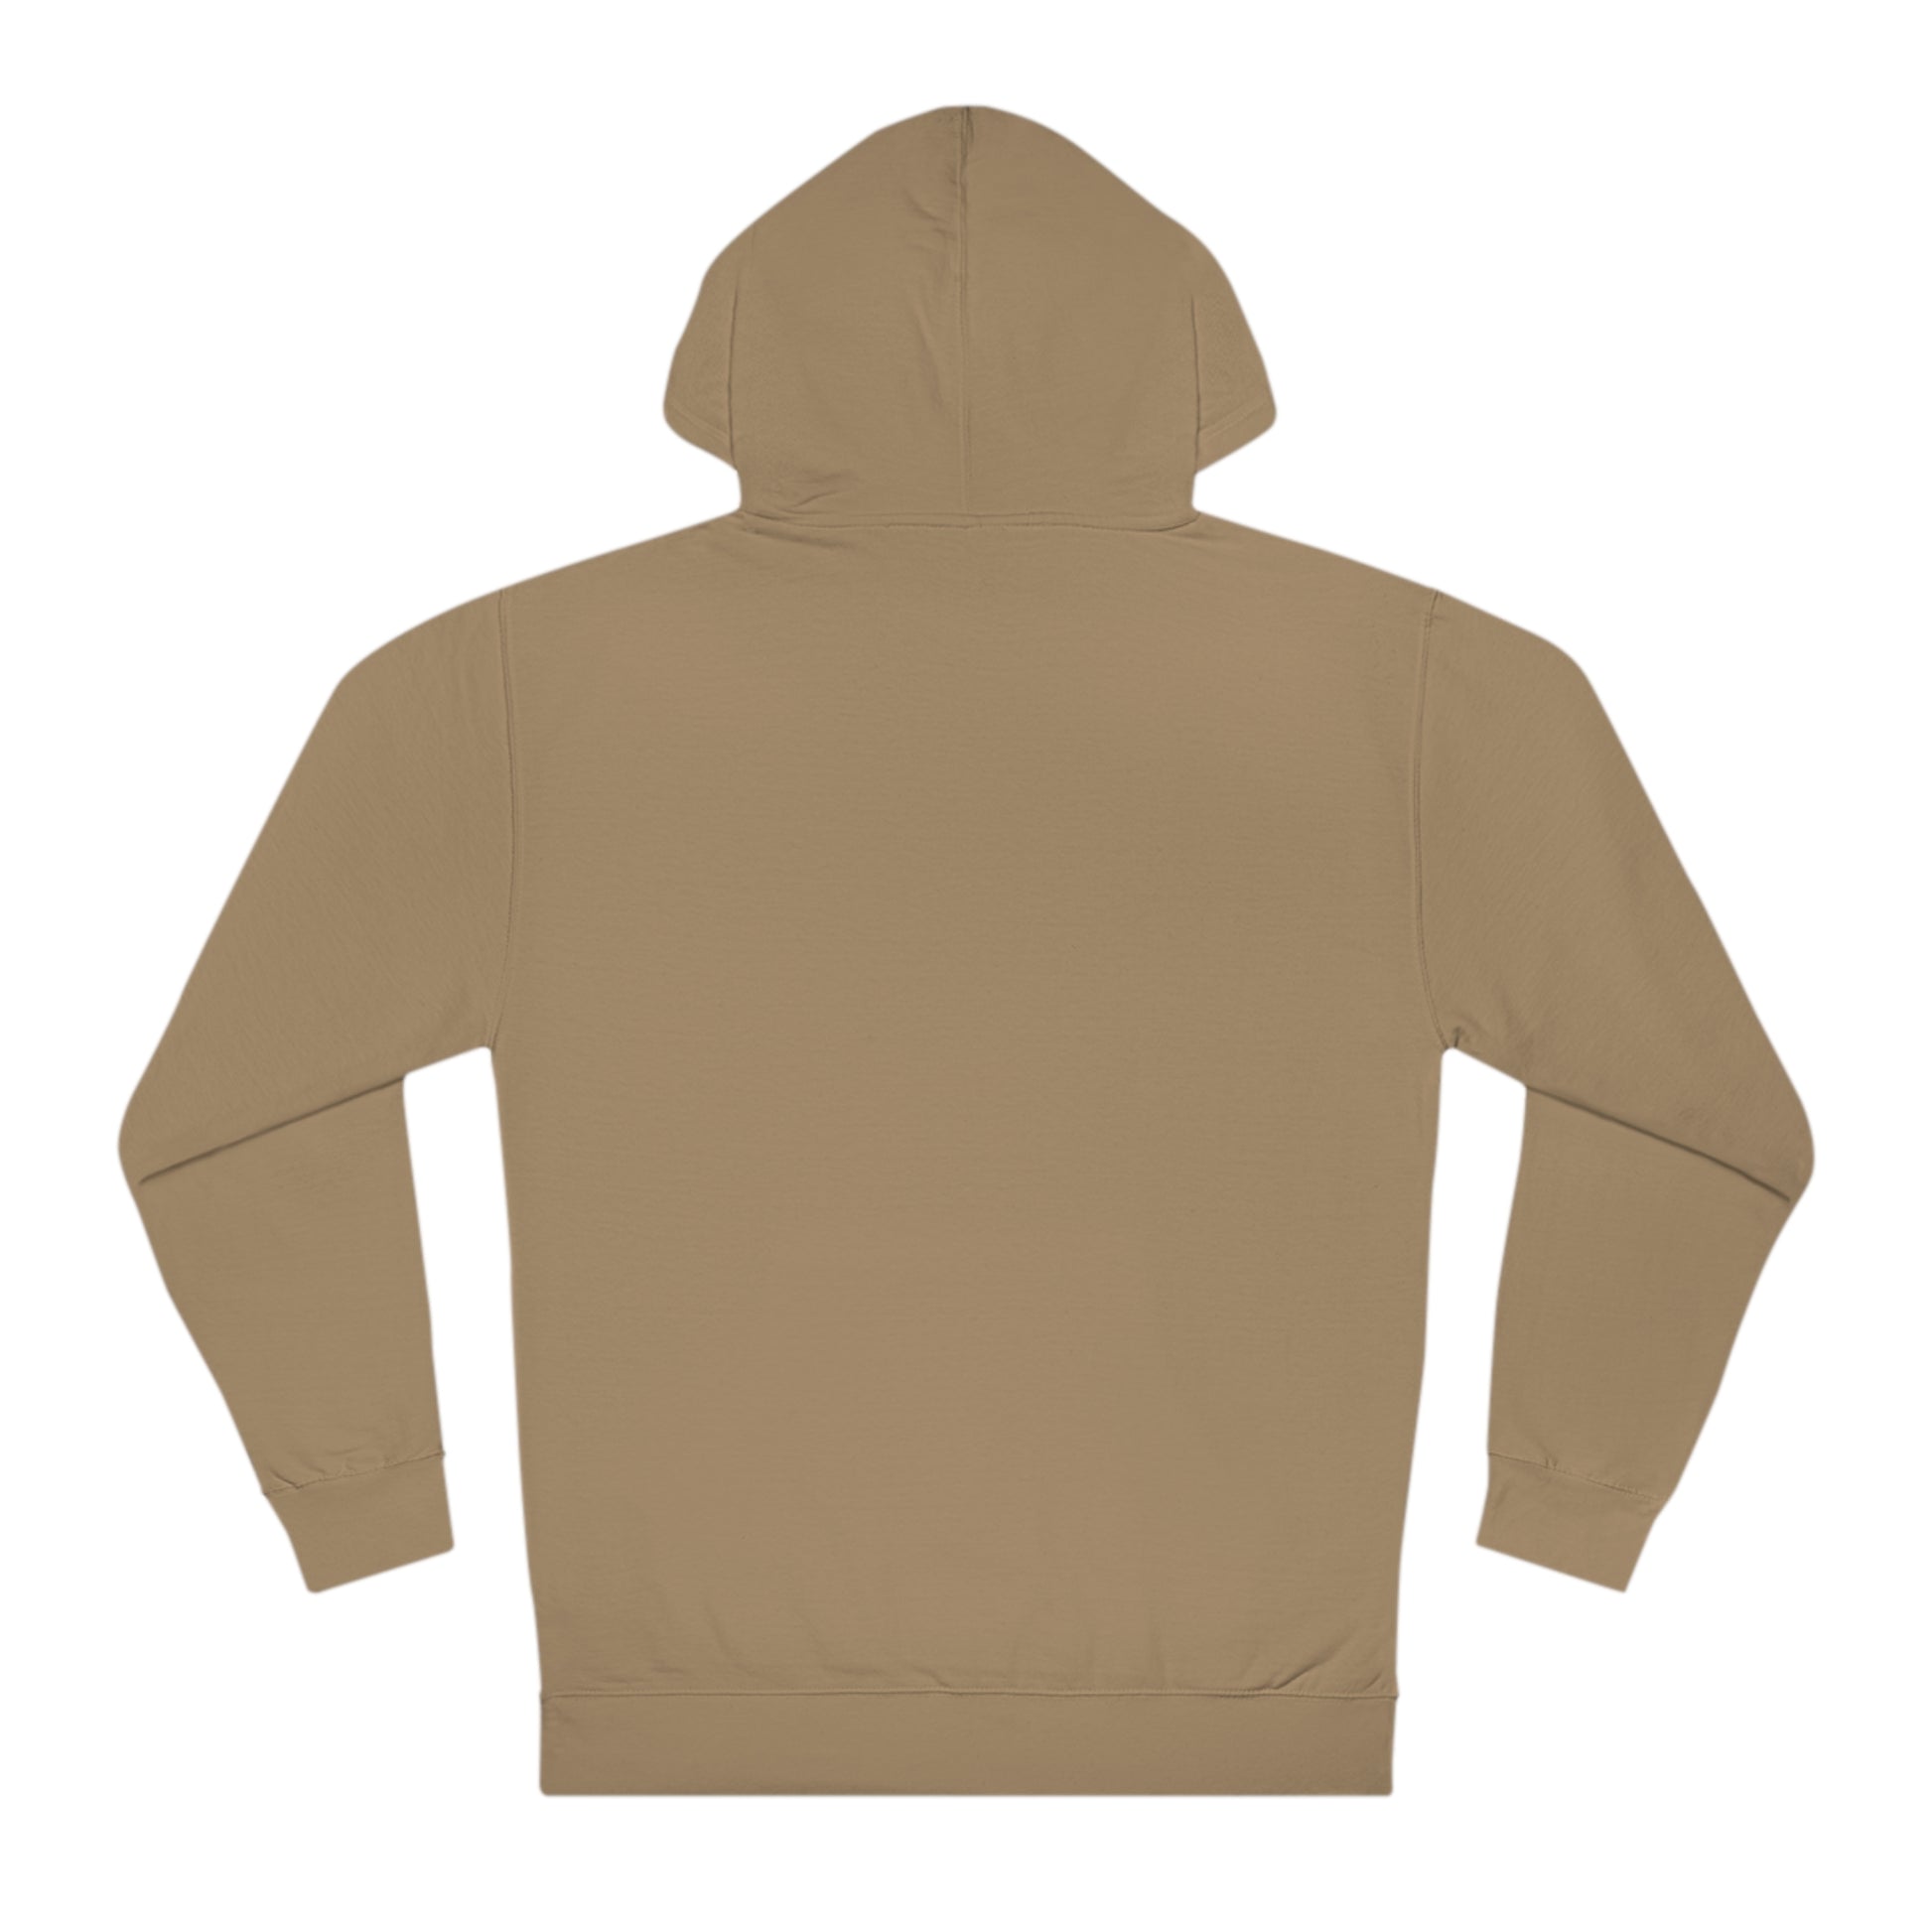 Unisex hooded sweatshirt hoodie in sand